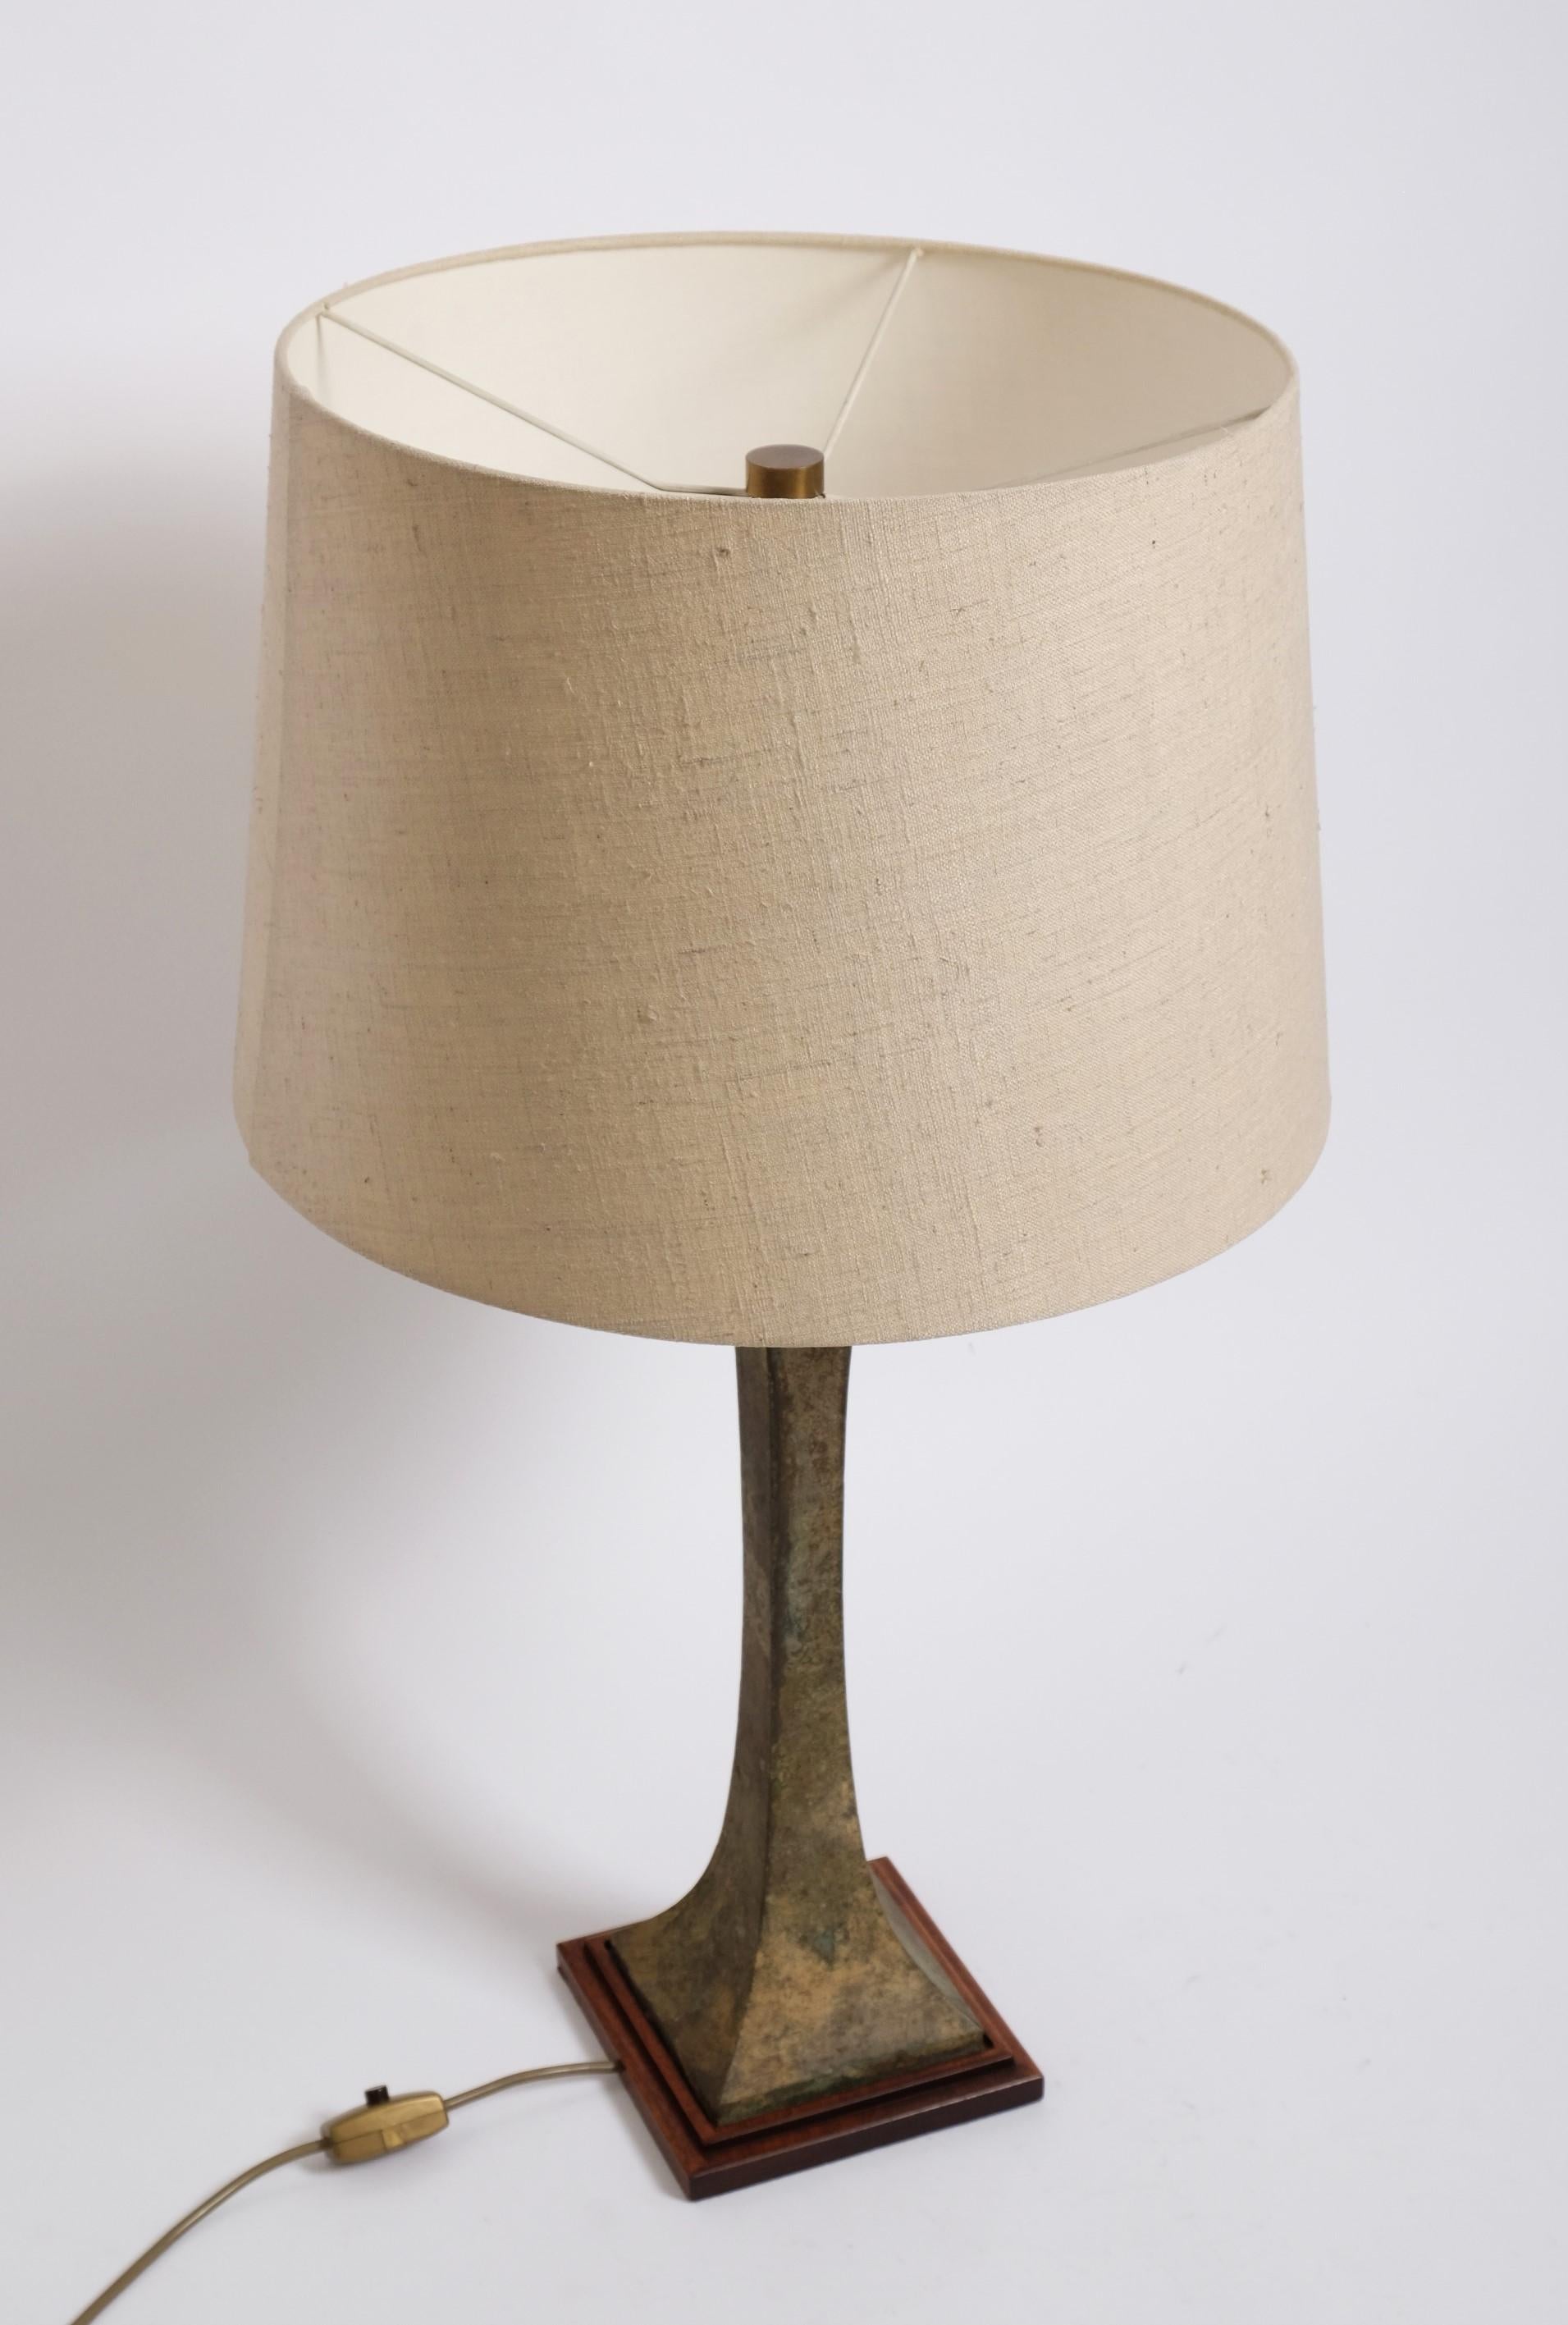 Bronze Verdigris Table Lamp by Stewart Ross James for Hansen Lighting, 1960s For Sale 1